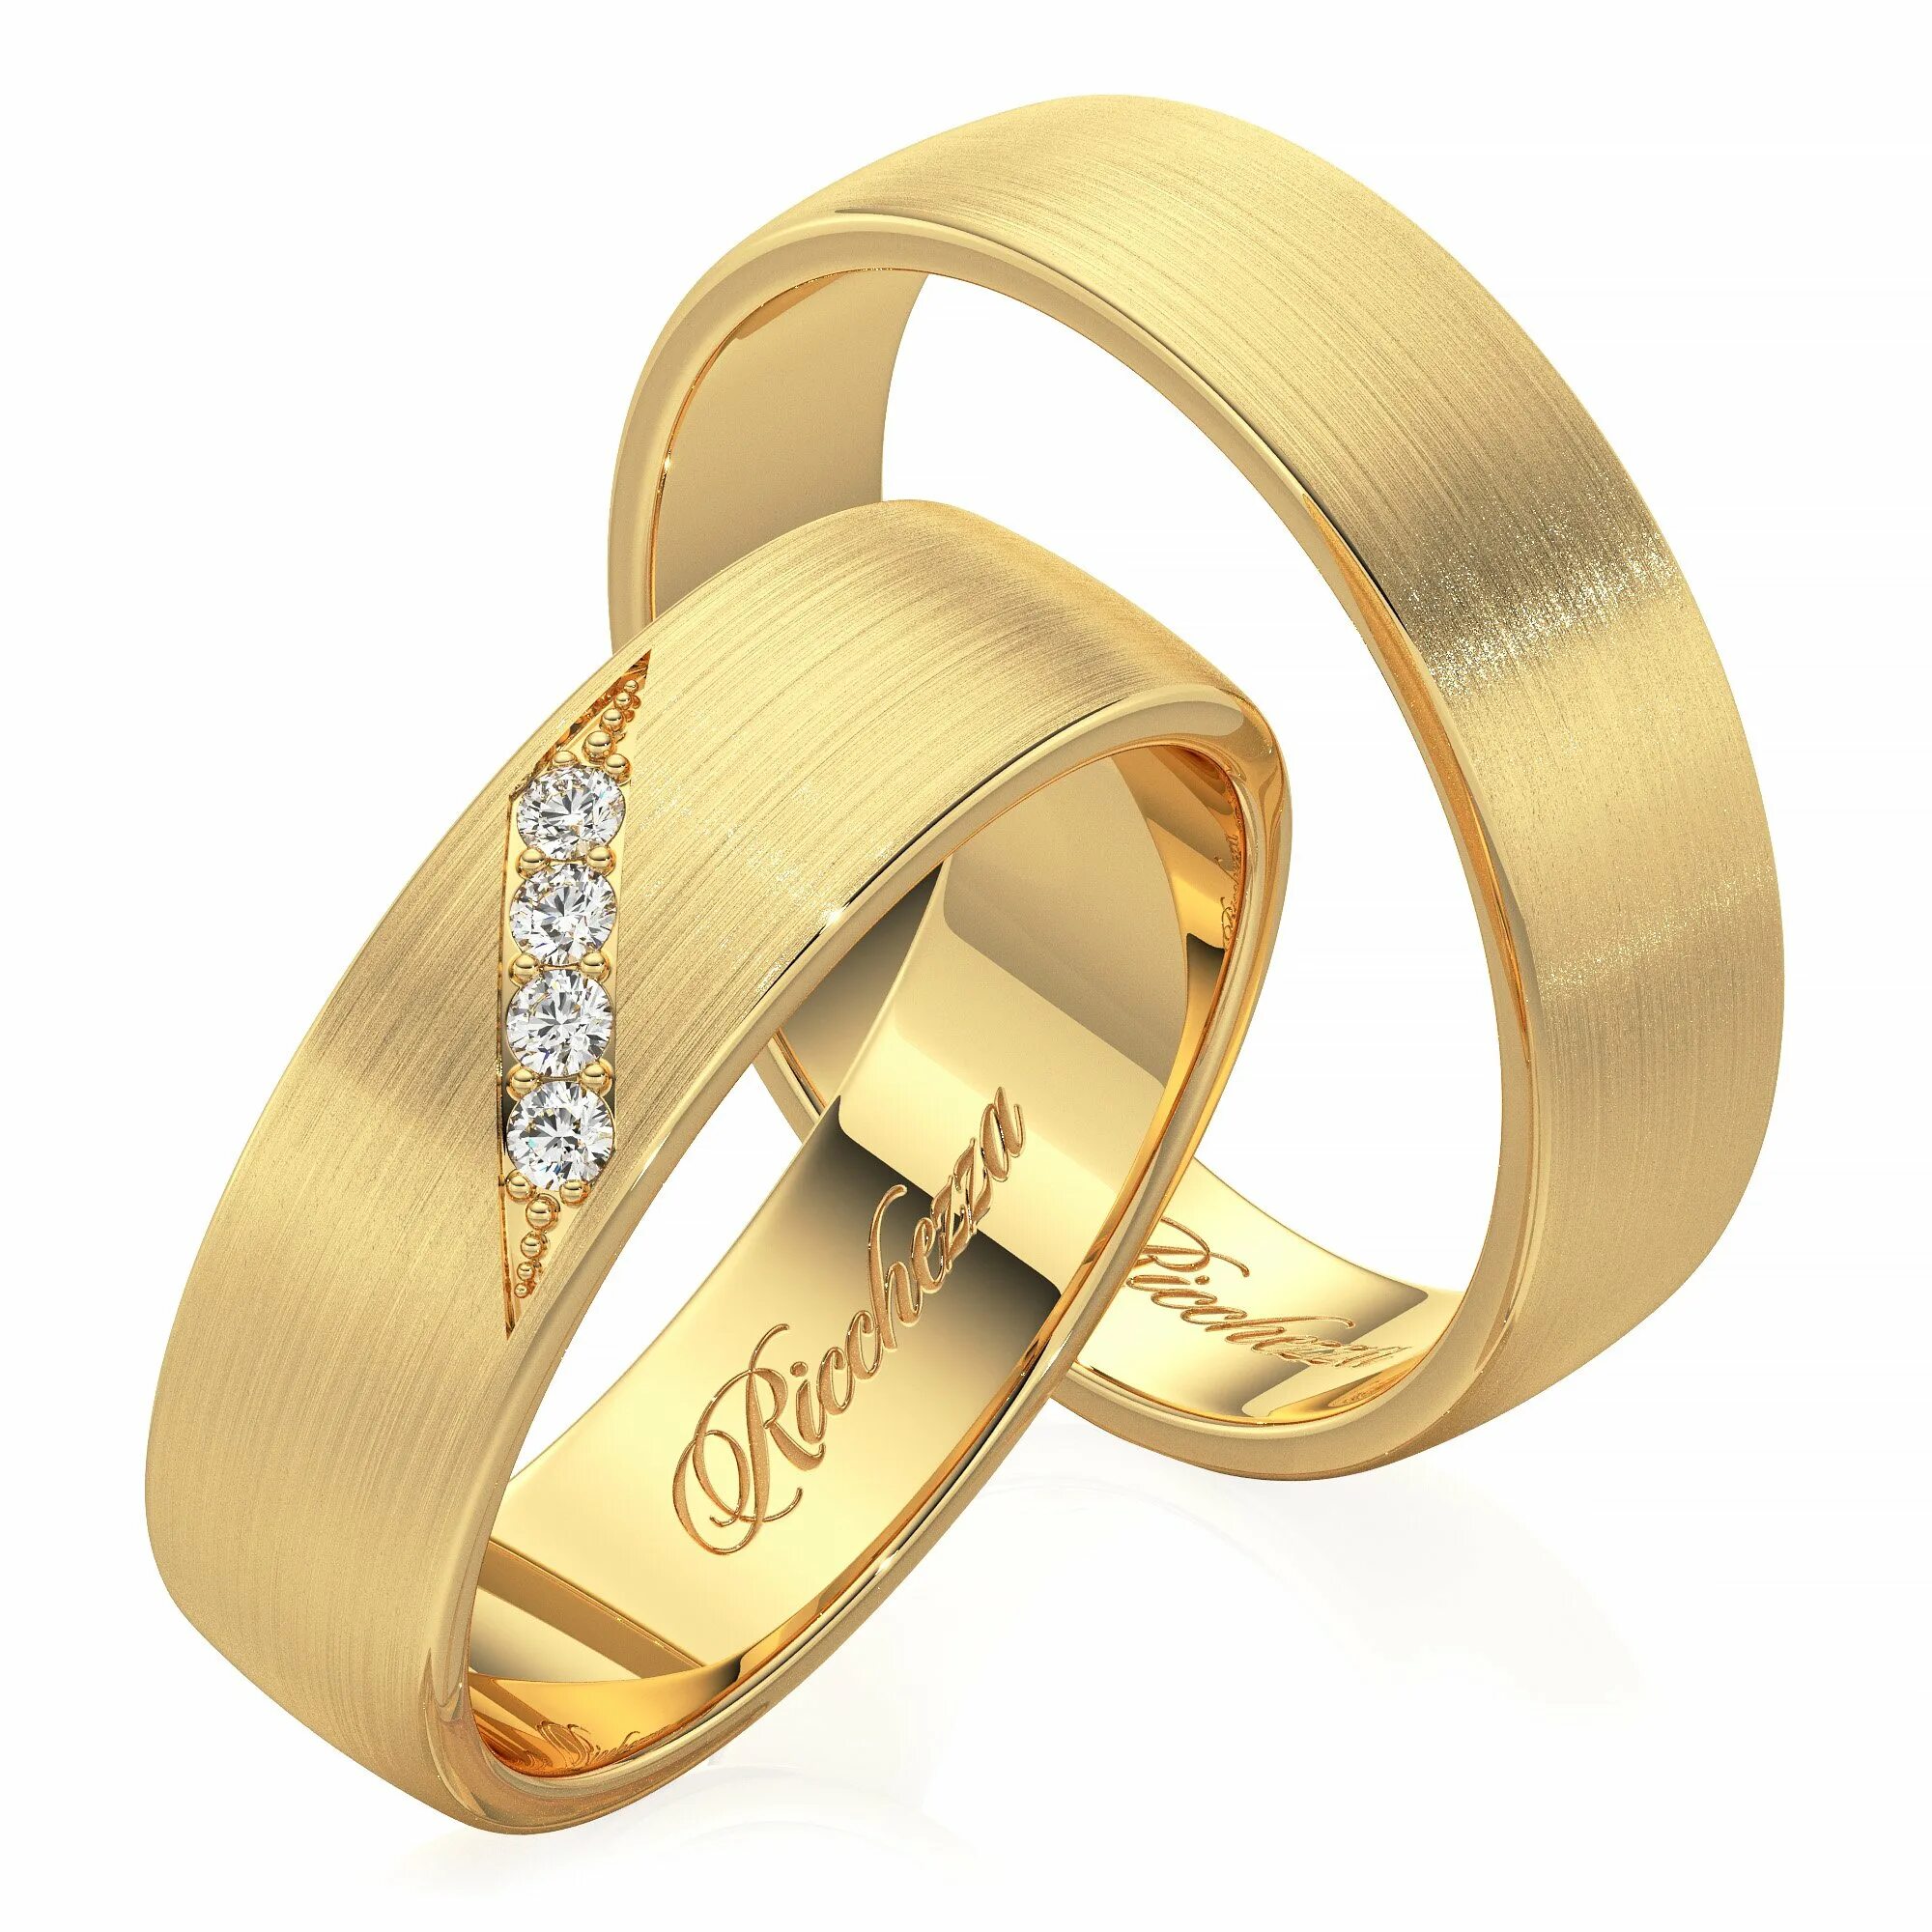 Кольца обручальные парные золотые Адамас. Обручальные кольца 585. Обручальные кольца парные 585. Золотые кольца обручалки 585 пробы. Золотые кольцо обручальное женские цена